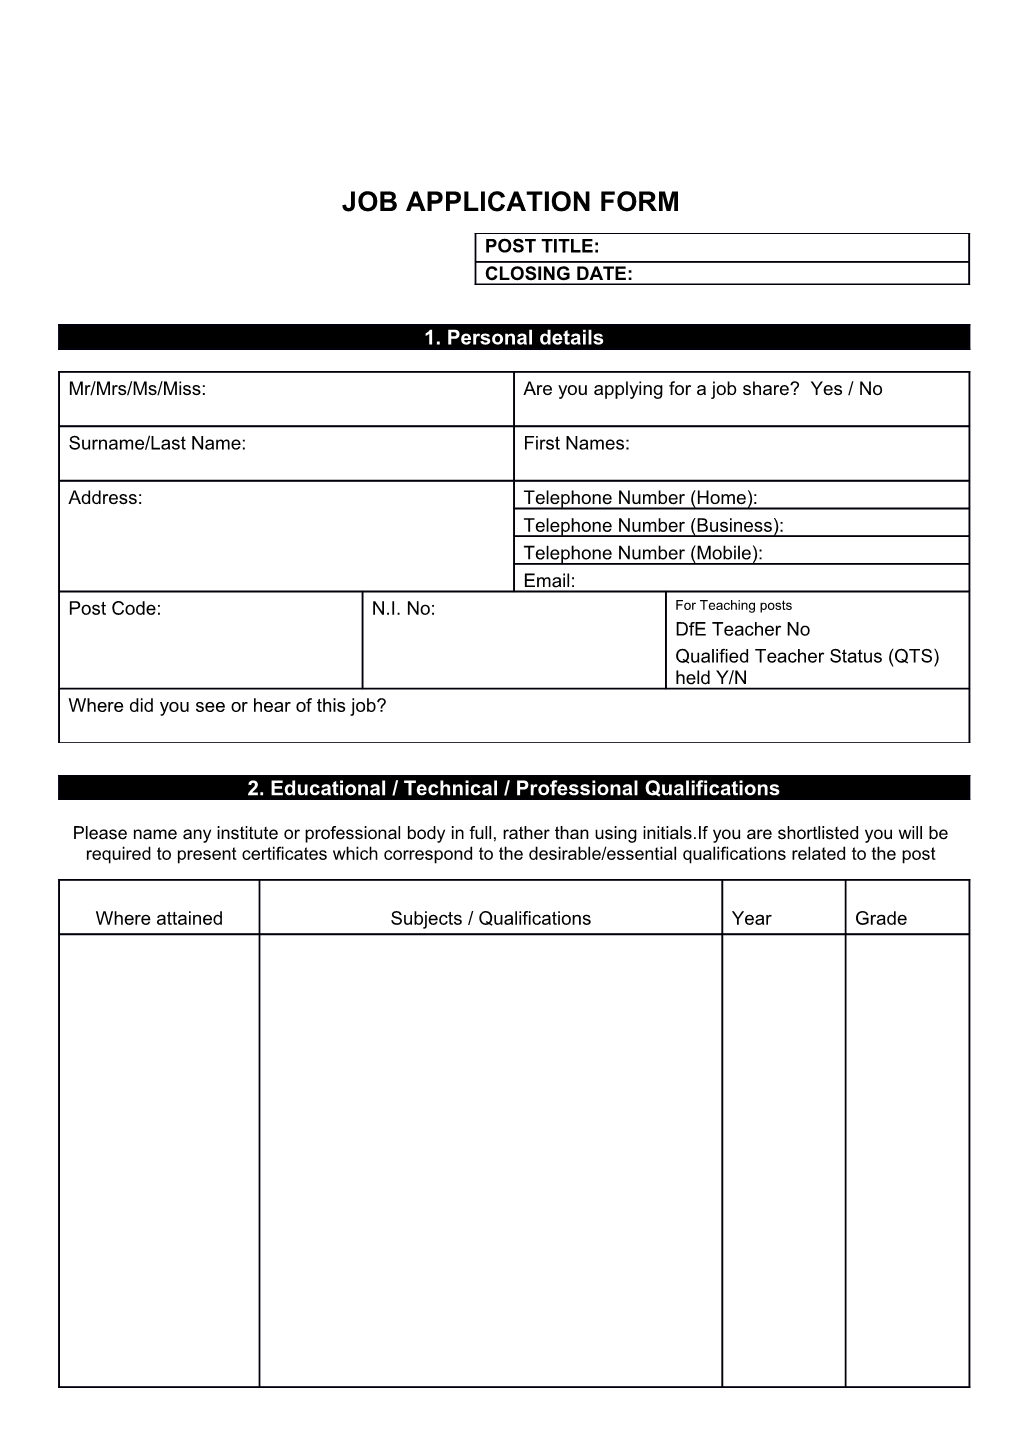 Job Application Form s21